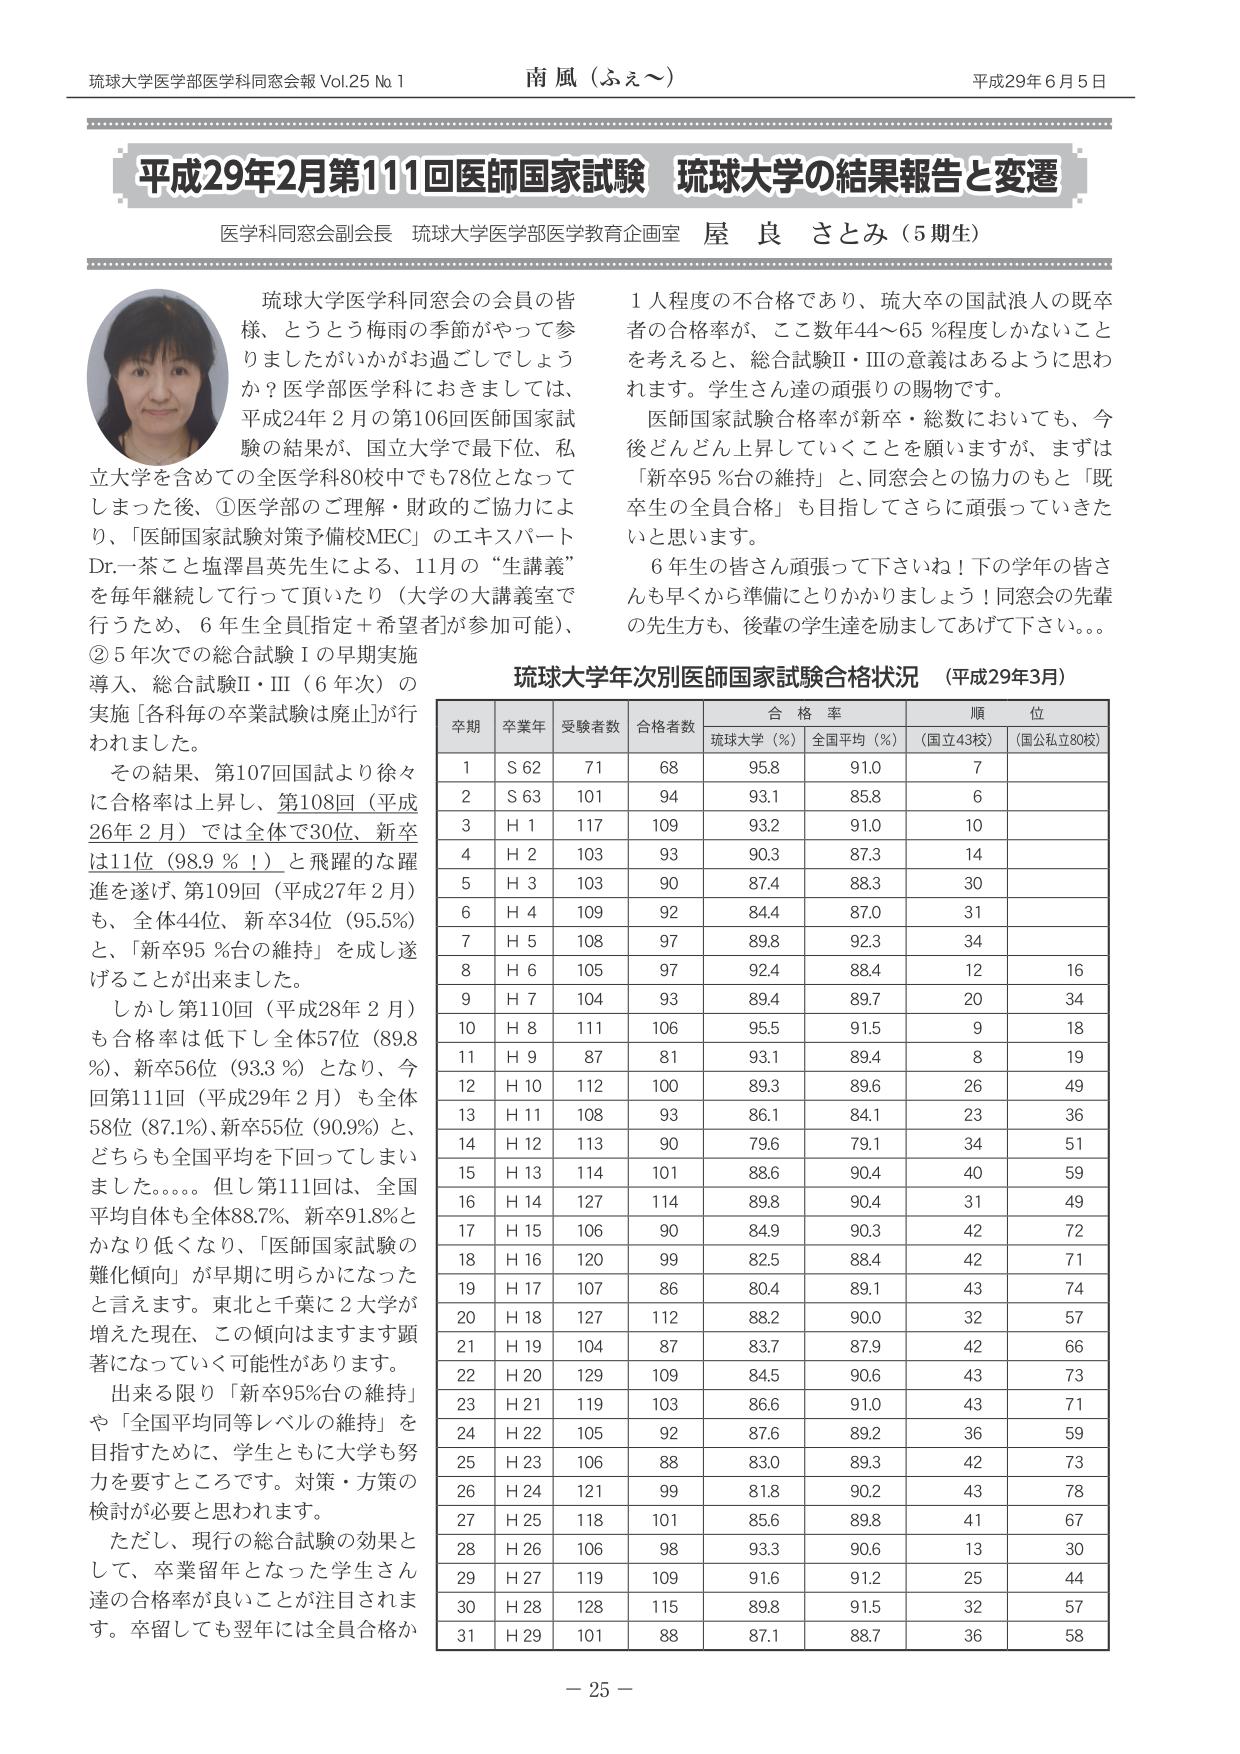 平成29年2月第111回医師国家試験 琉球大学の結果報告と変遷(1)